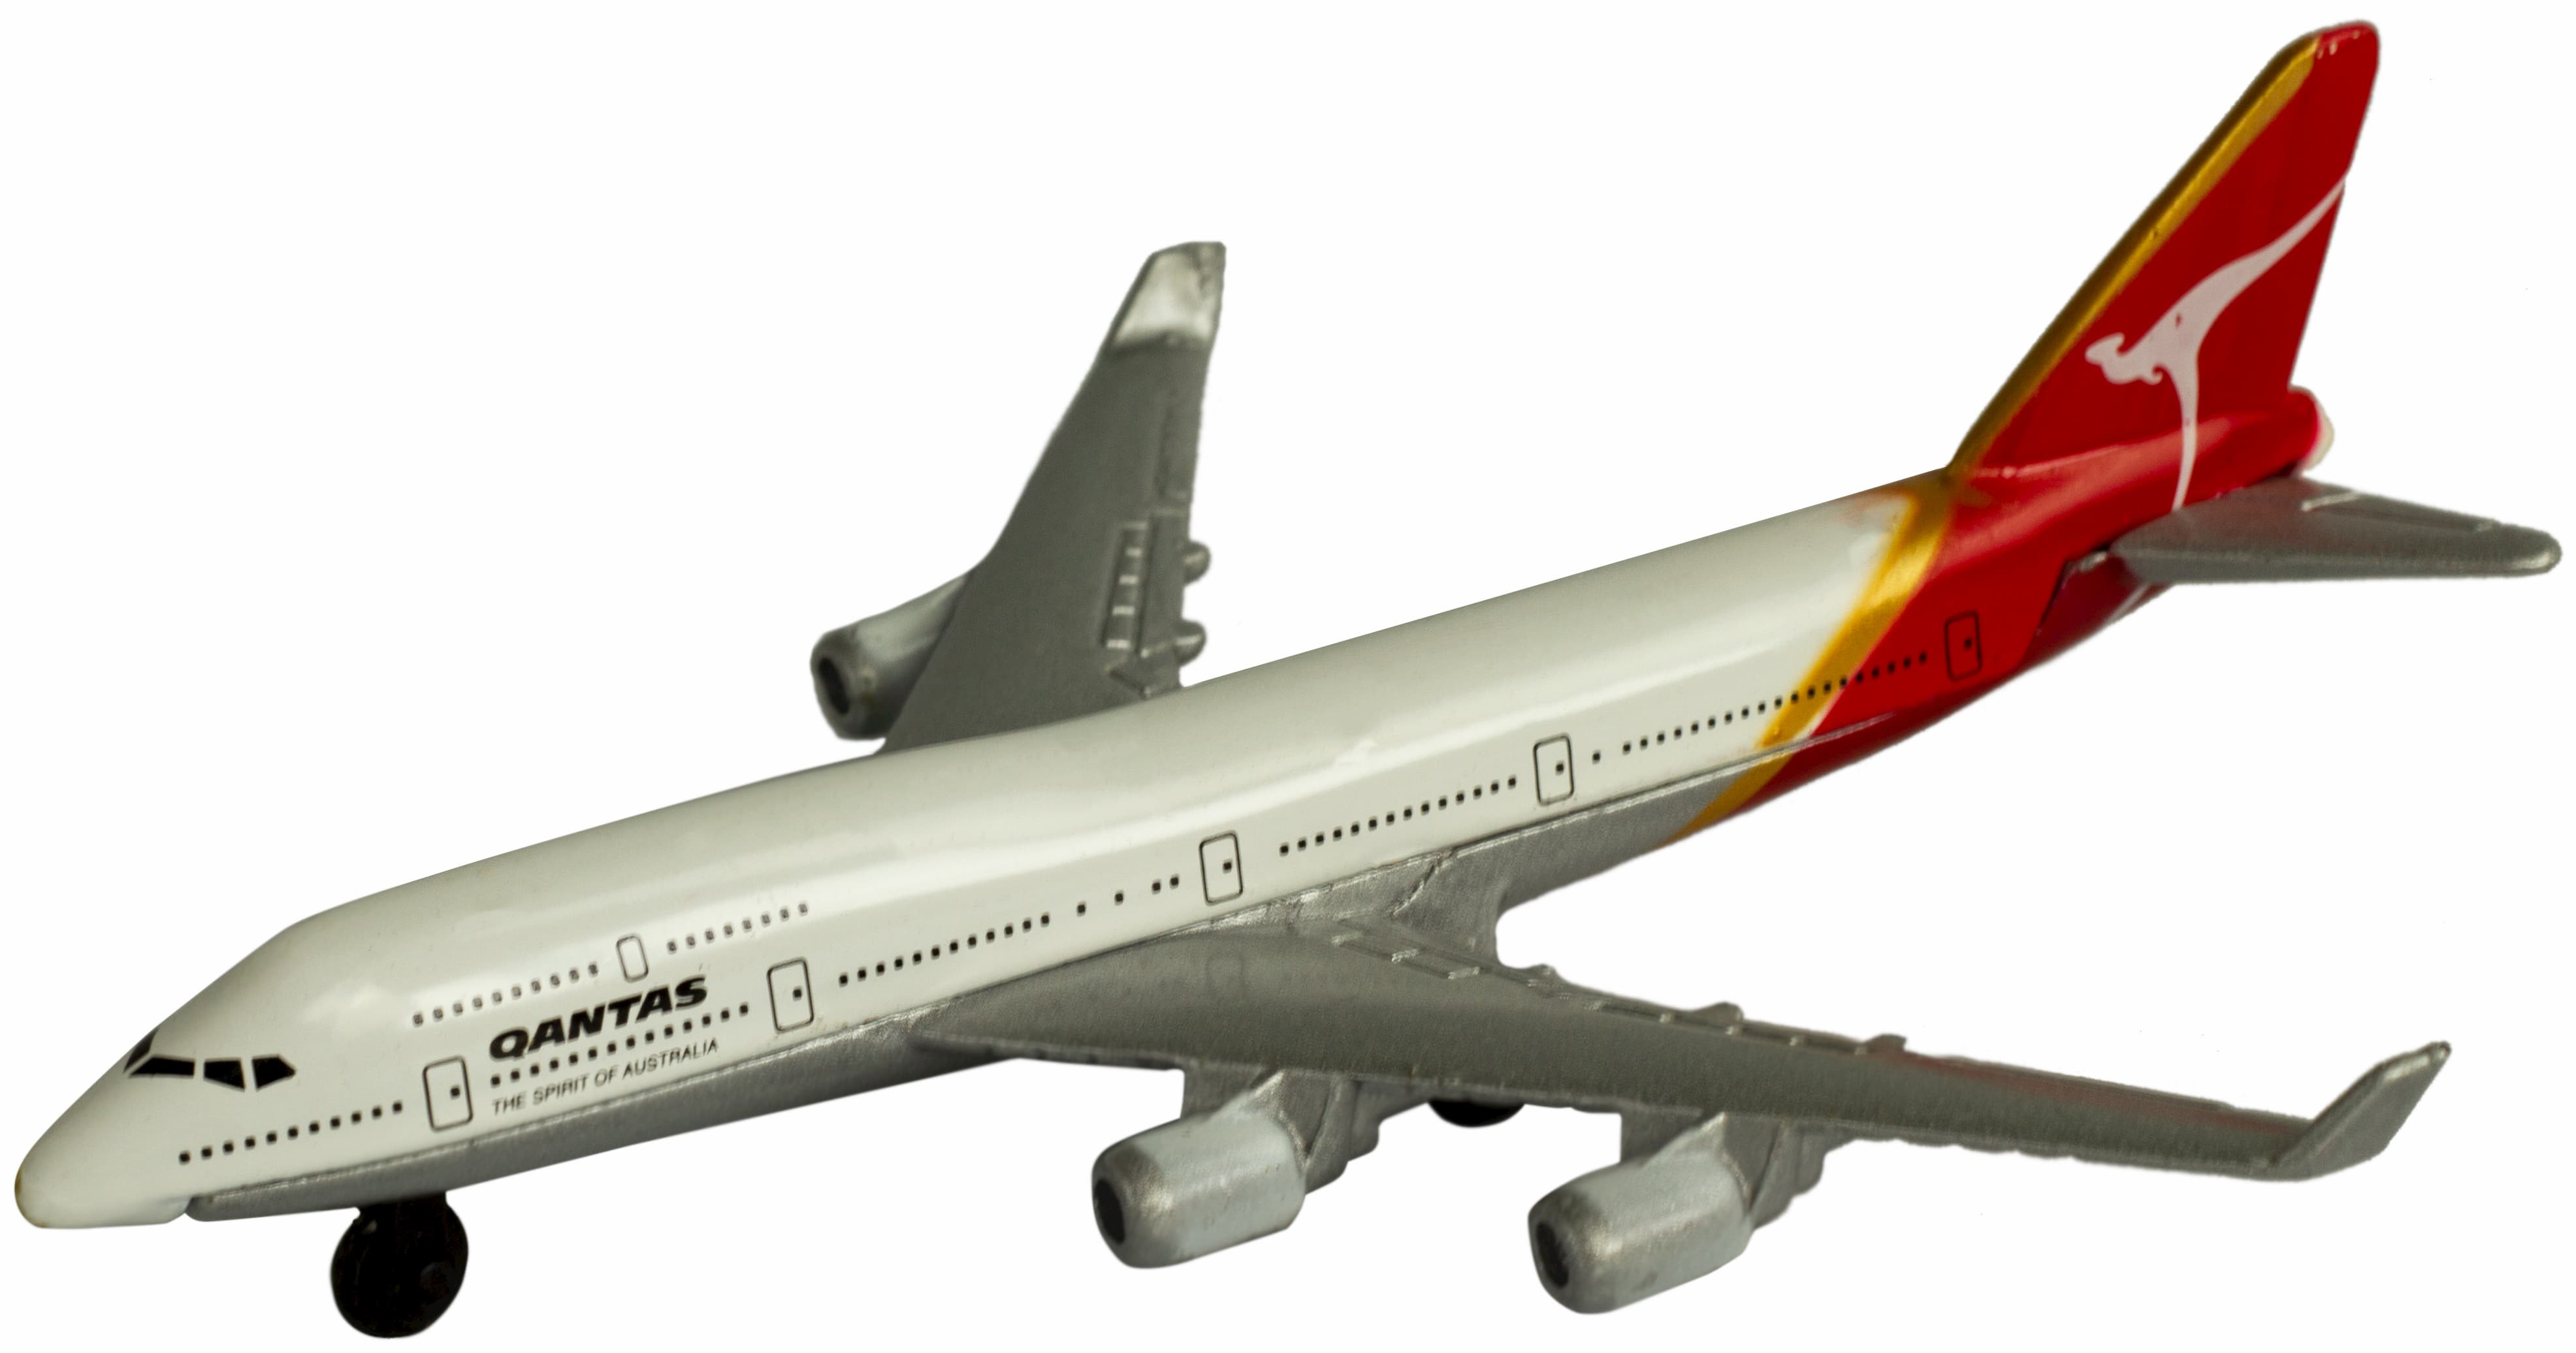 Металлическая модель самолета Jet Liner «Boeing / Airbus» 13 см. 8511312B / Qantas